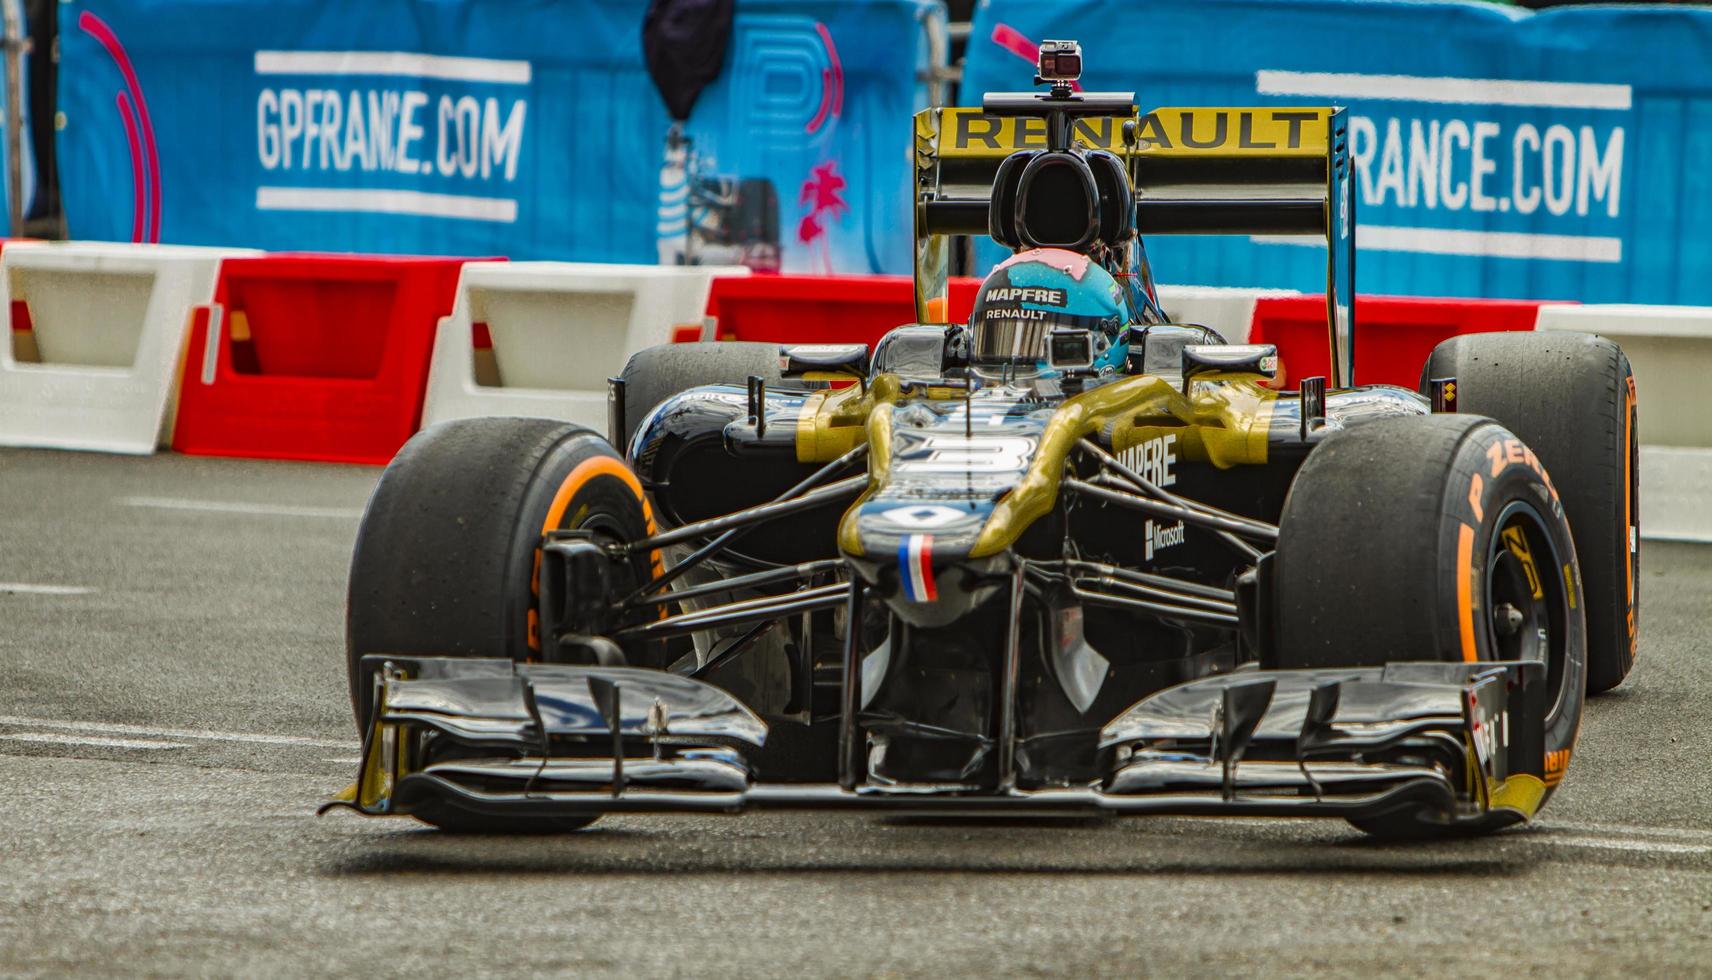 Nizza, Frankreich, 1. Mai 2019 - Daniel Ricciardo im Renault-Formel-1-Rennwagen in Nizza, Frankreich. es ist teil der roadshow des formel 1 grand prix de france. foto